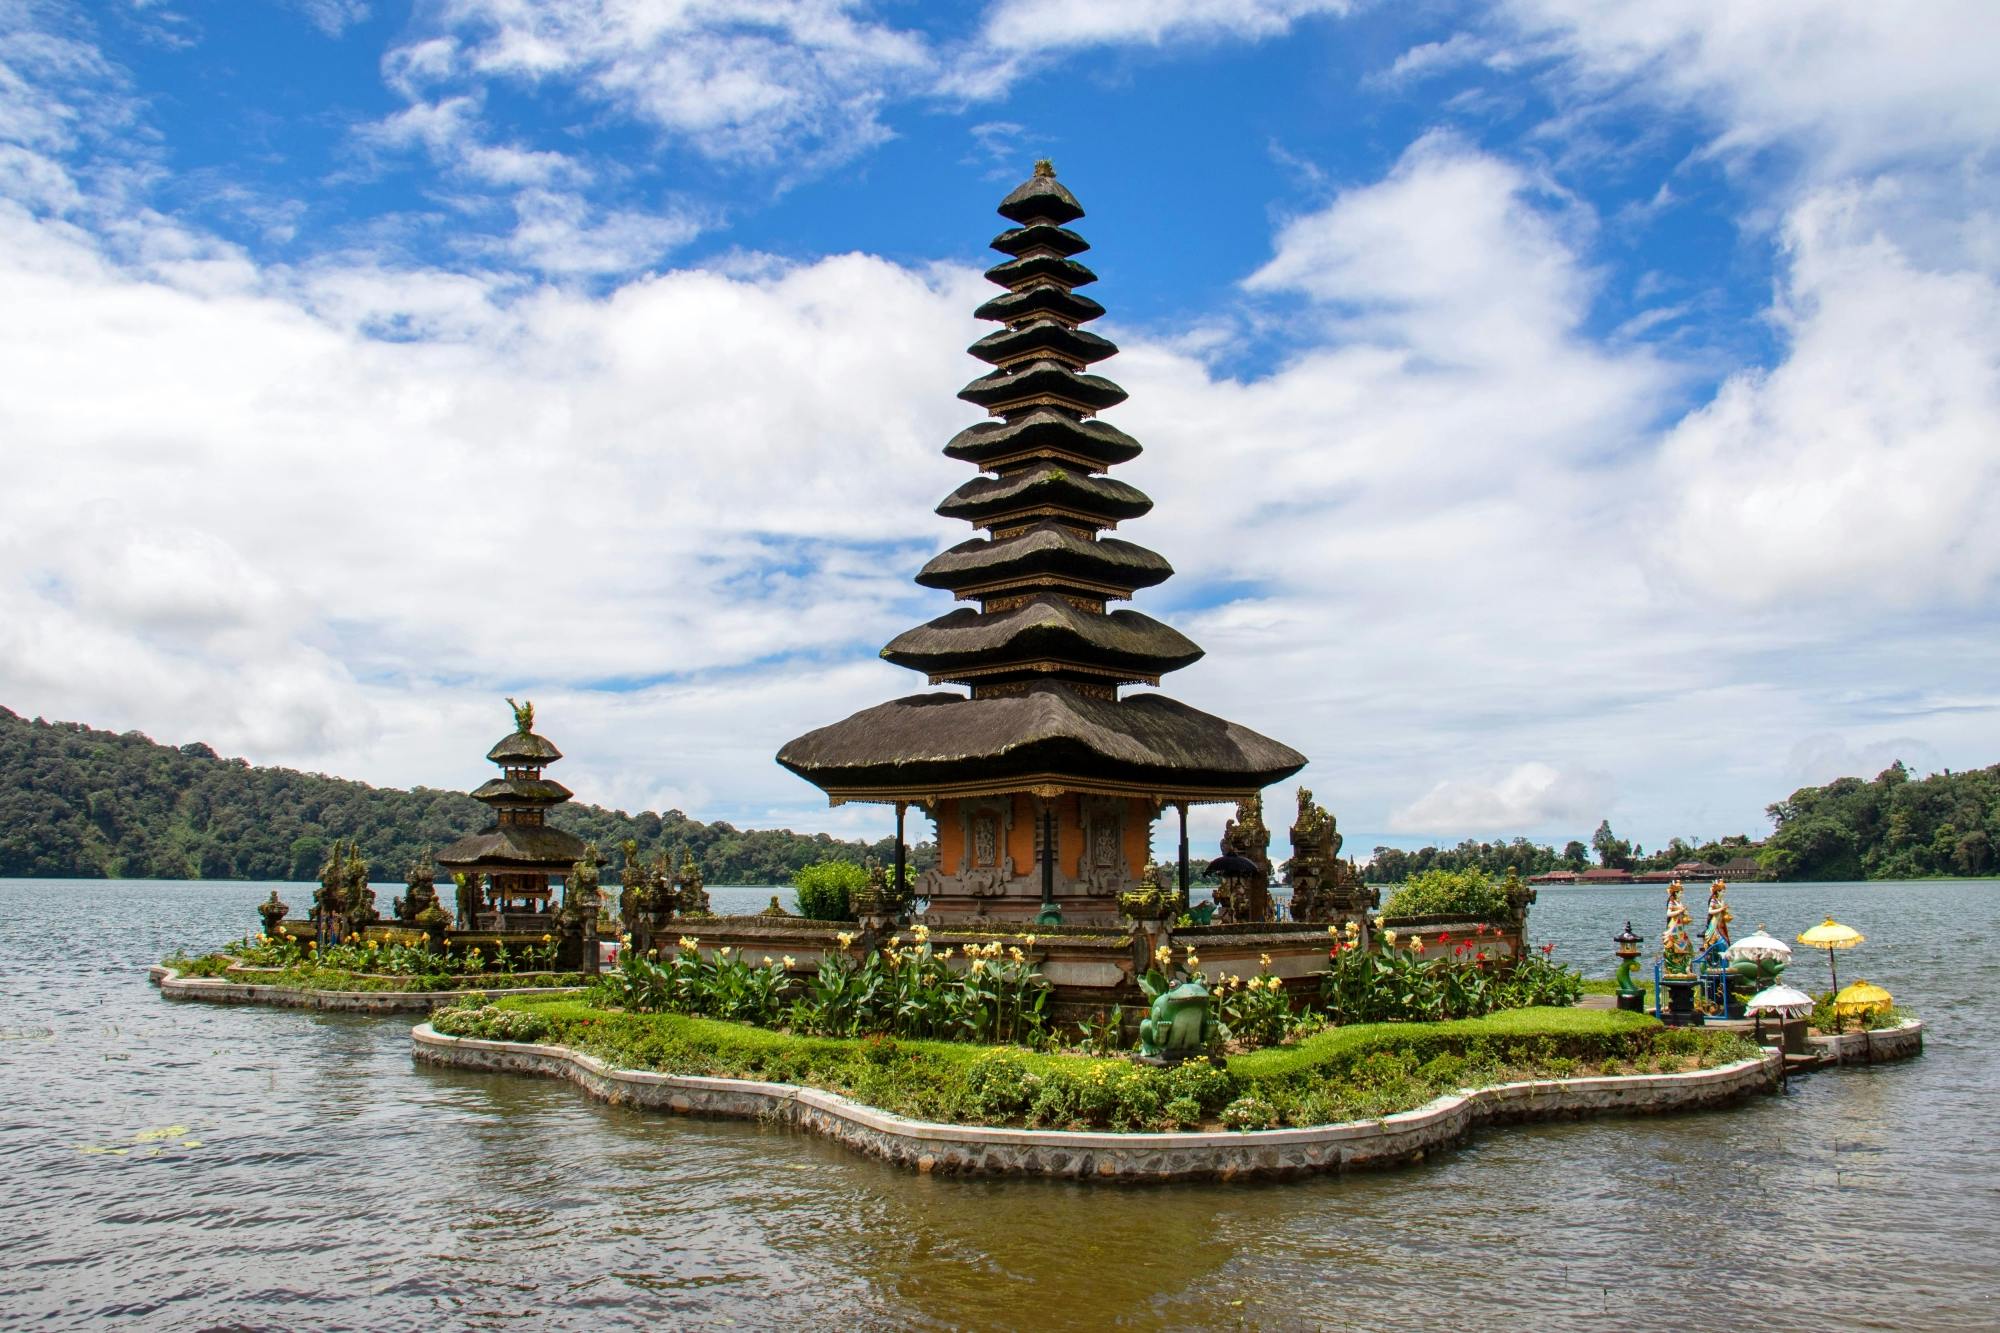 Rundtur til vidunderne på Bali